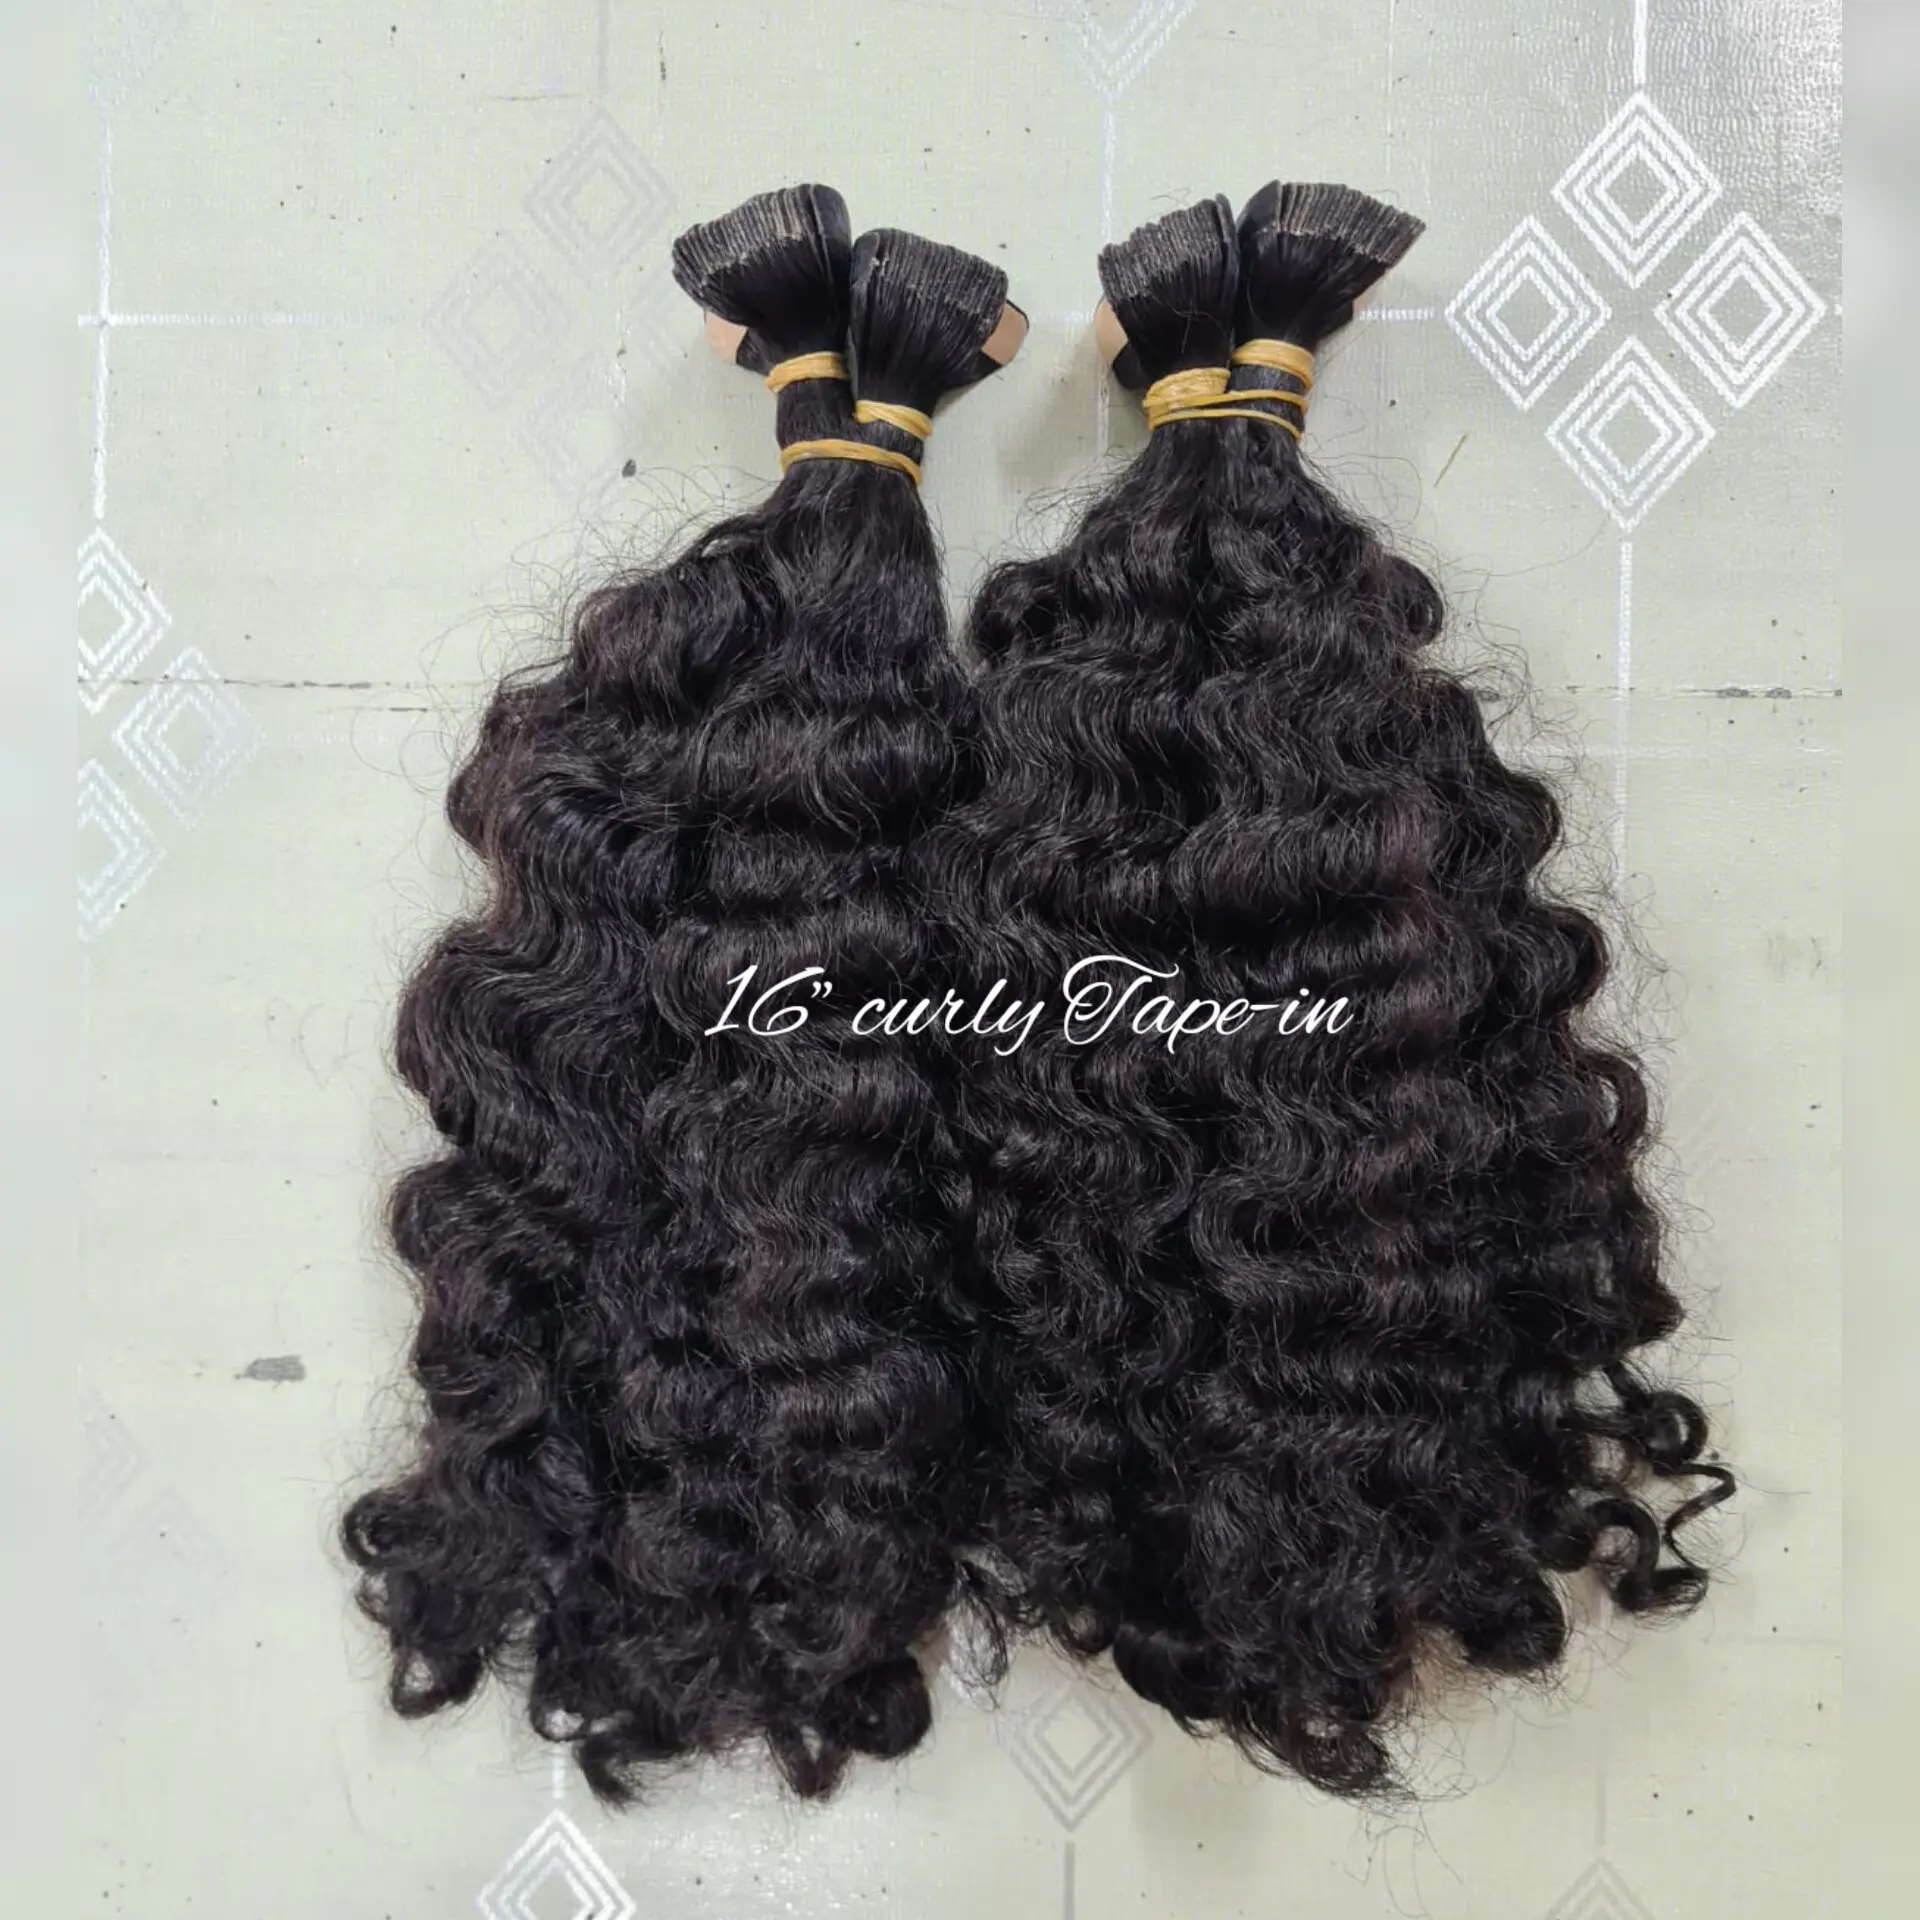 Việt nam nhà sản xuất bán buôn màu sắc tự nhiên tóc con người Băng thô trong phần mở rộng với tất cả các chiều dài